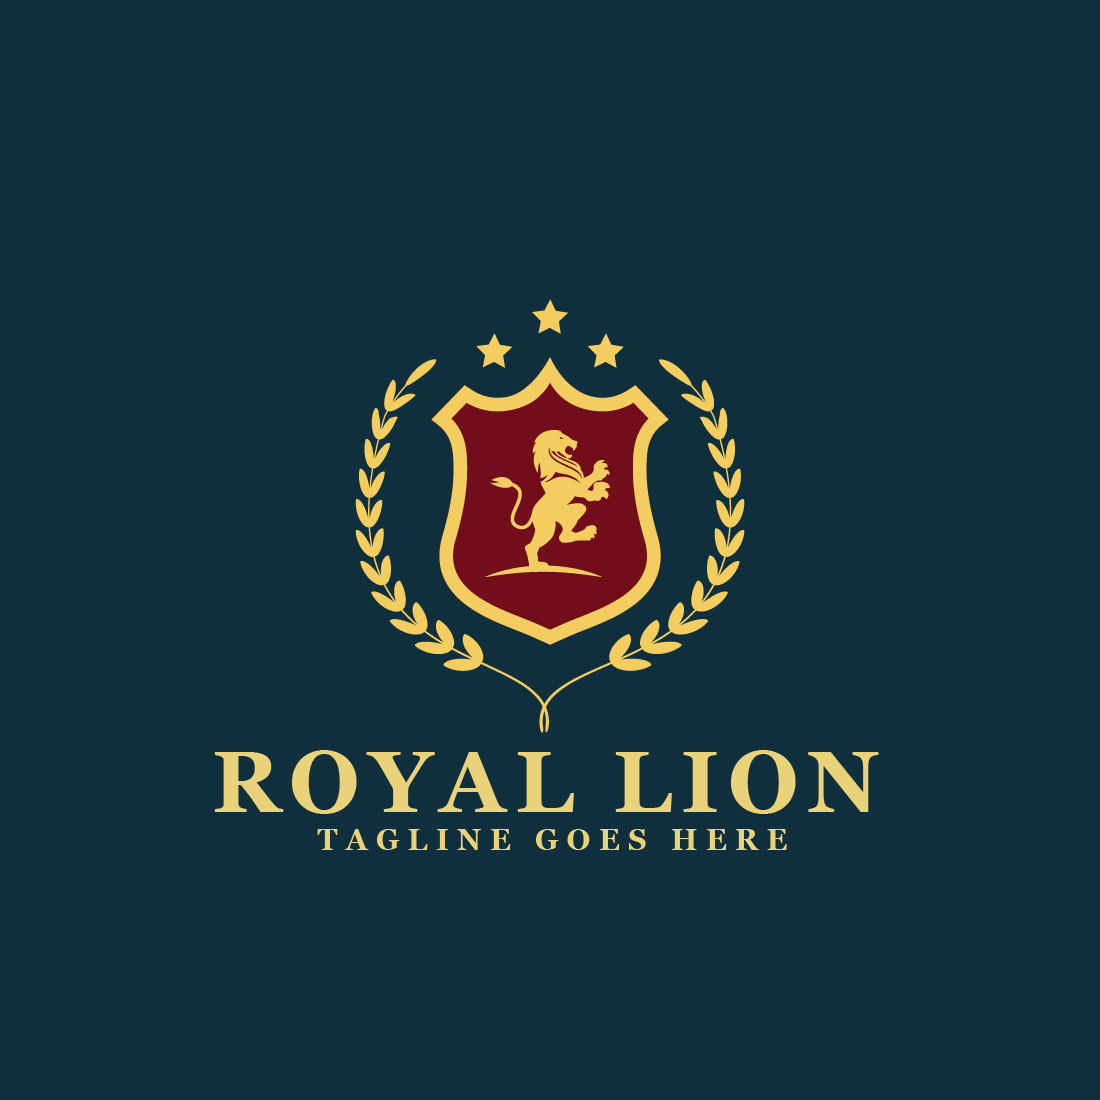 Royal Lion Heraldic Logos preview image.